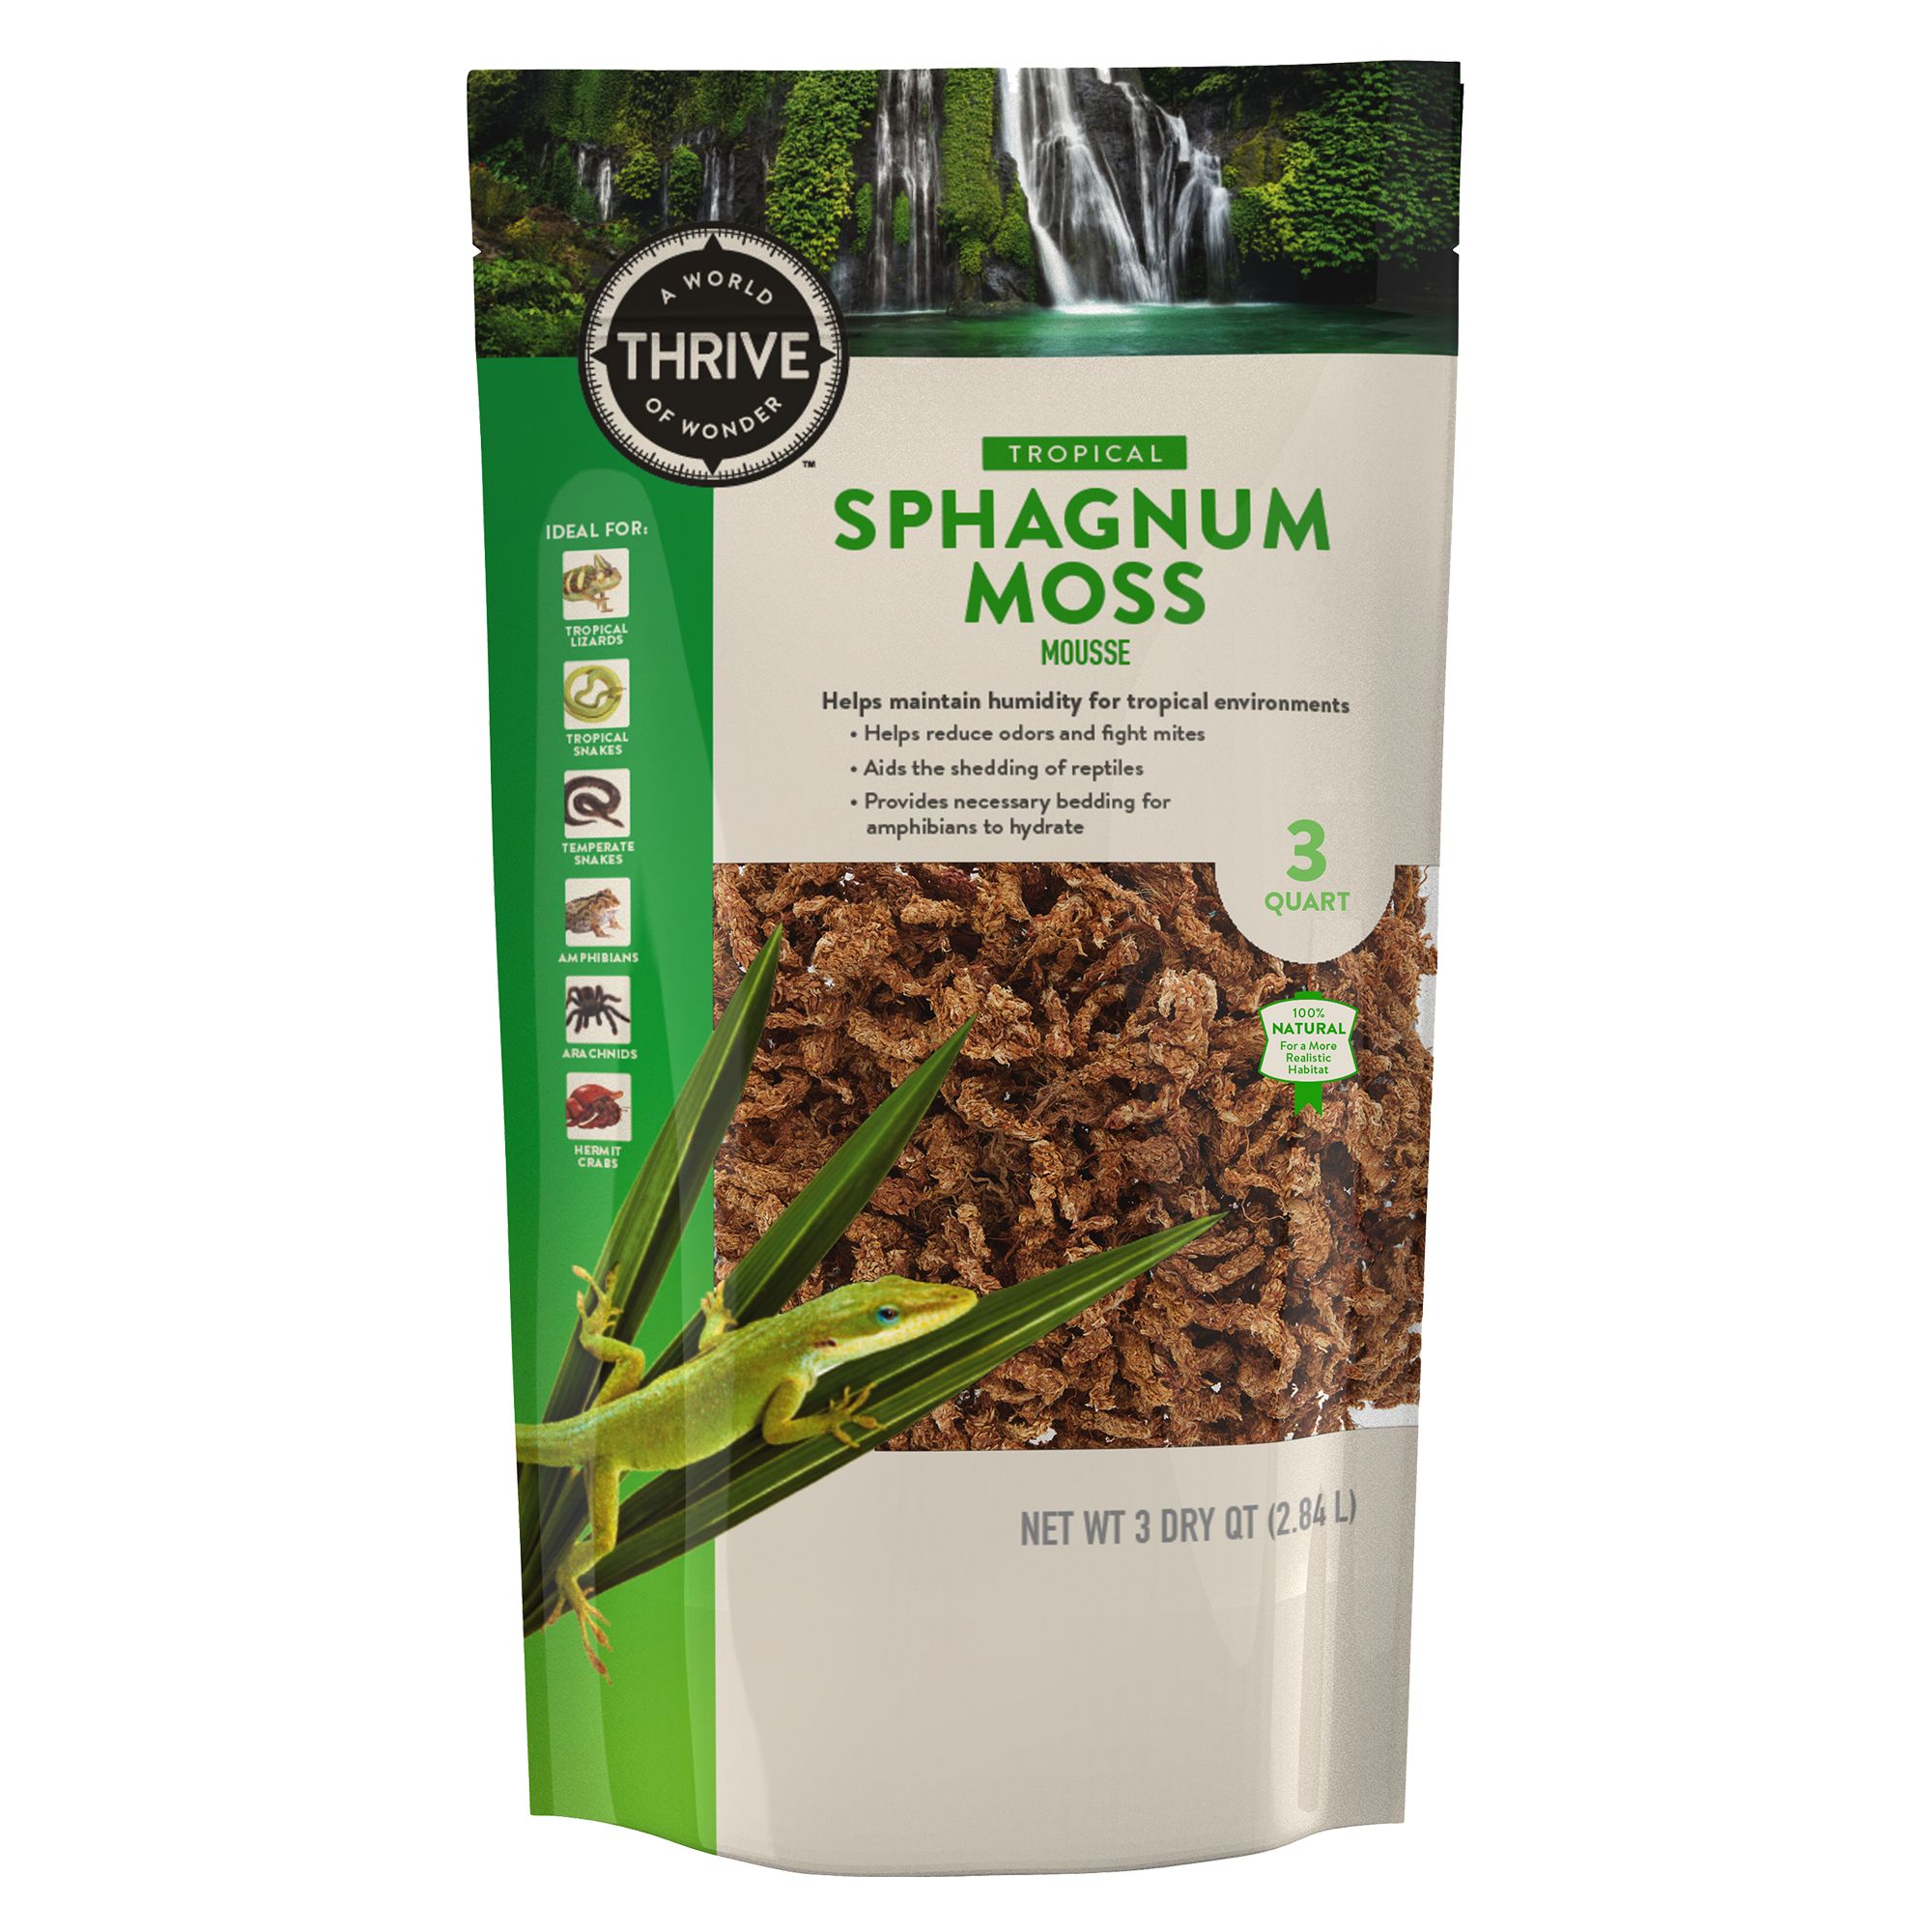 Imagitarium Sphagnum Moss